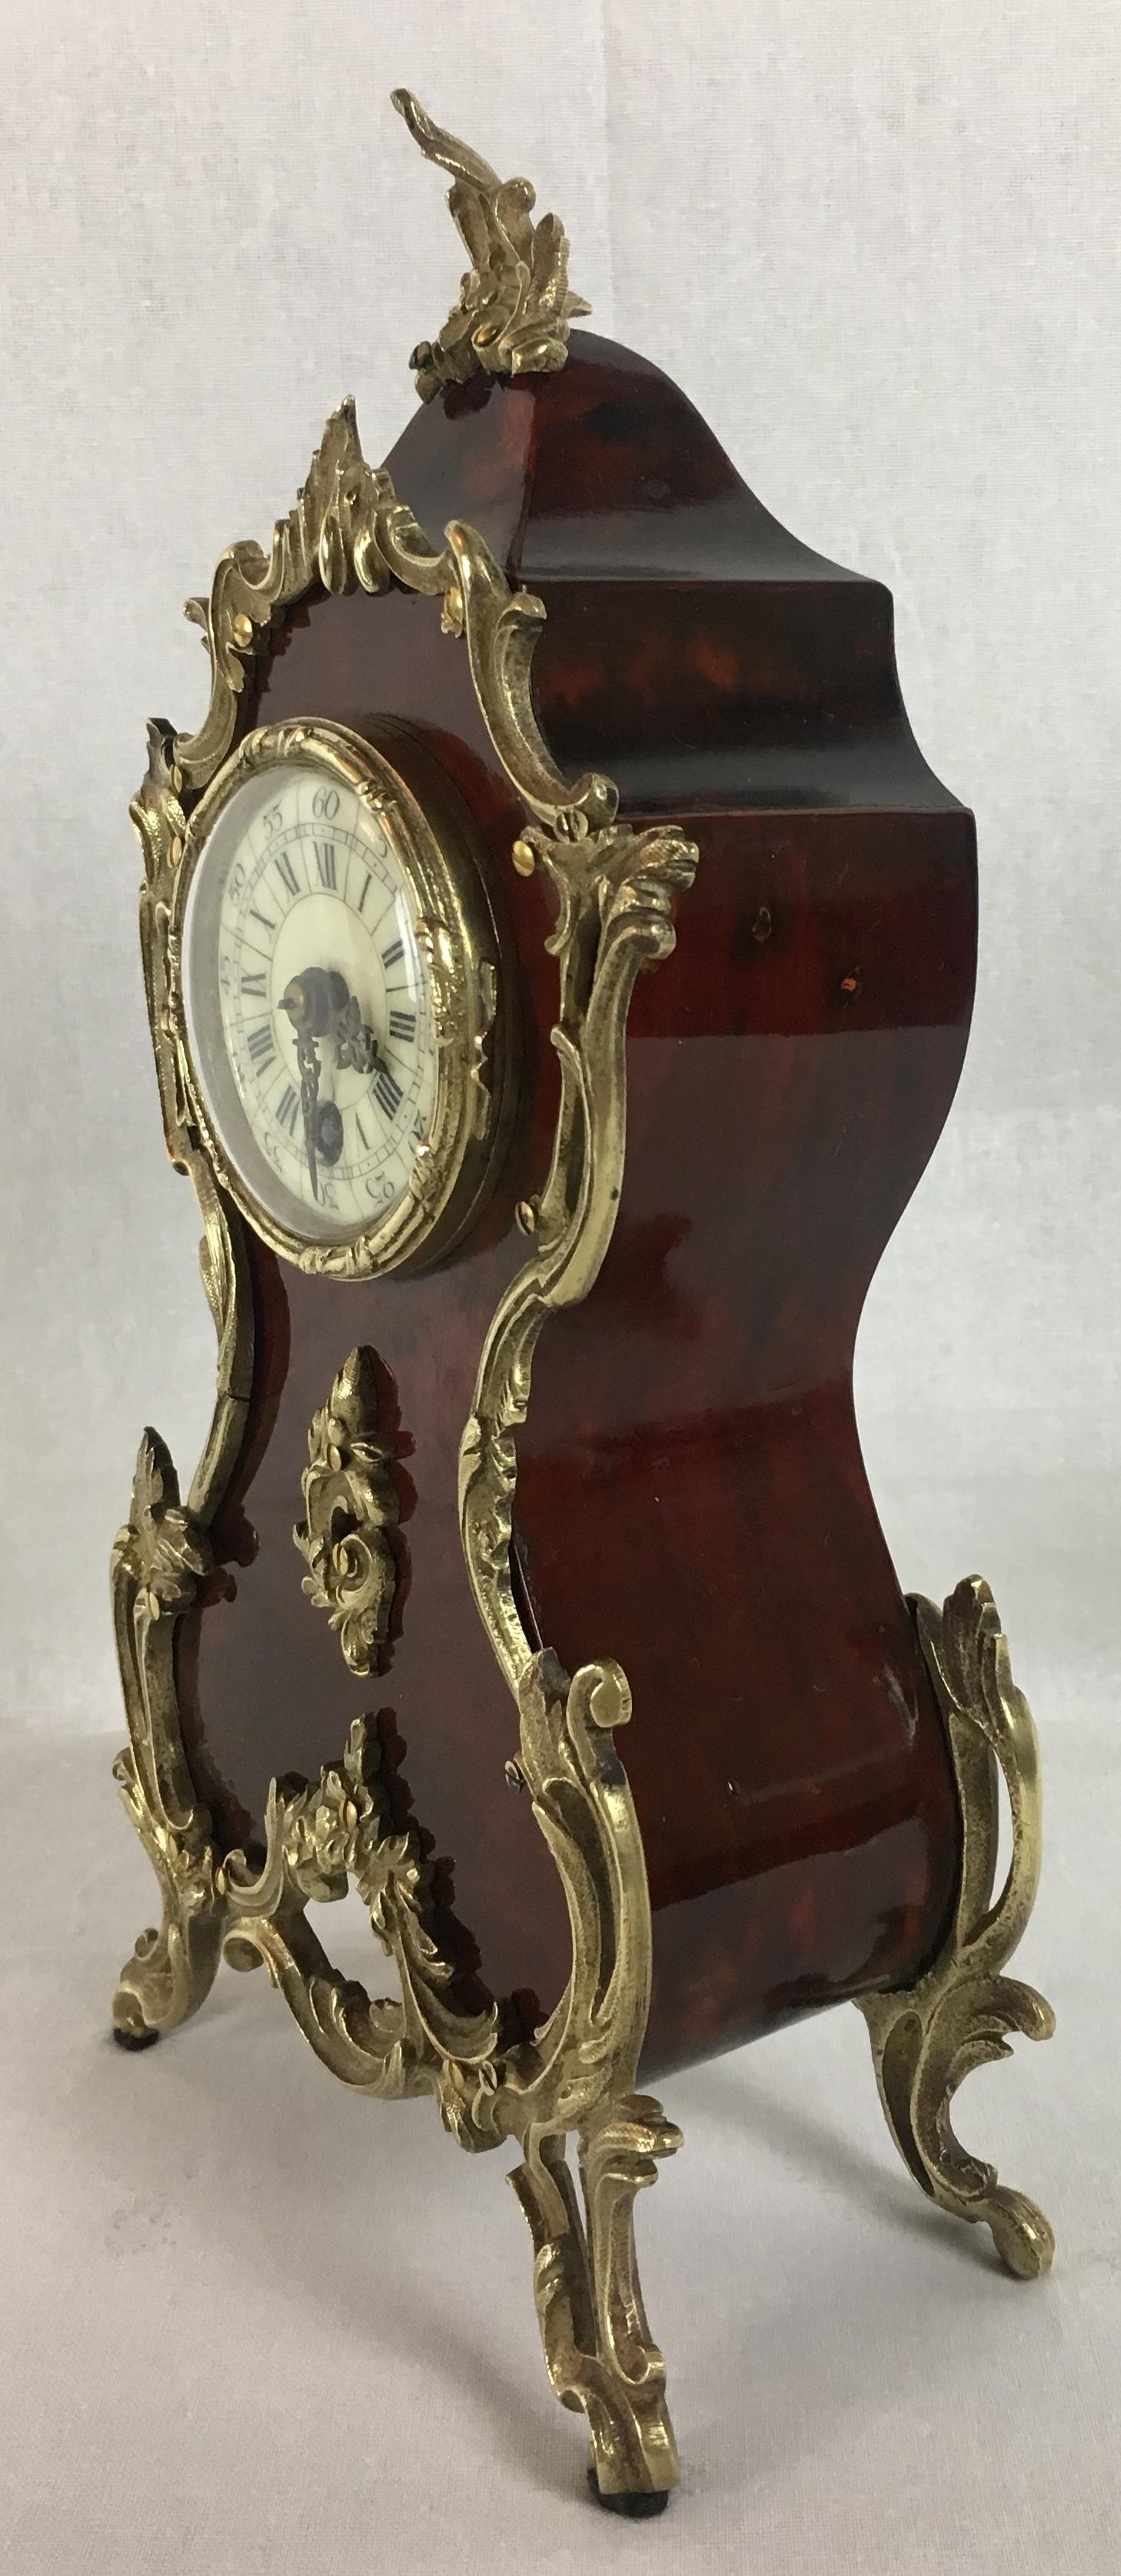 Une superbe horloge française ancienne de qualité, vers 1875. Cette horloge de cheminée de style Boulle est réalisée en écaille de tortue rouge, typique de l'époque, et les incrustations de laiton sur la face avant et les côtés du boîtier accentuent